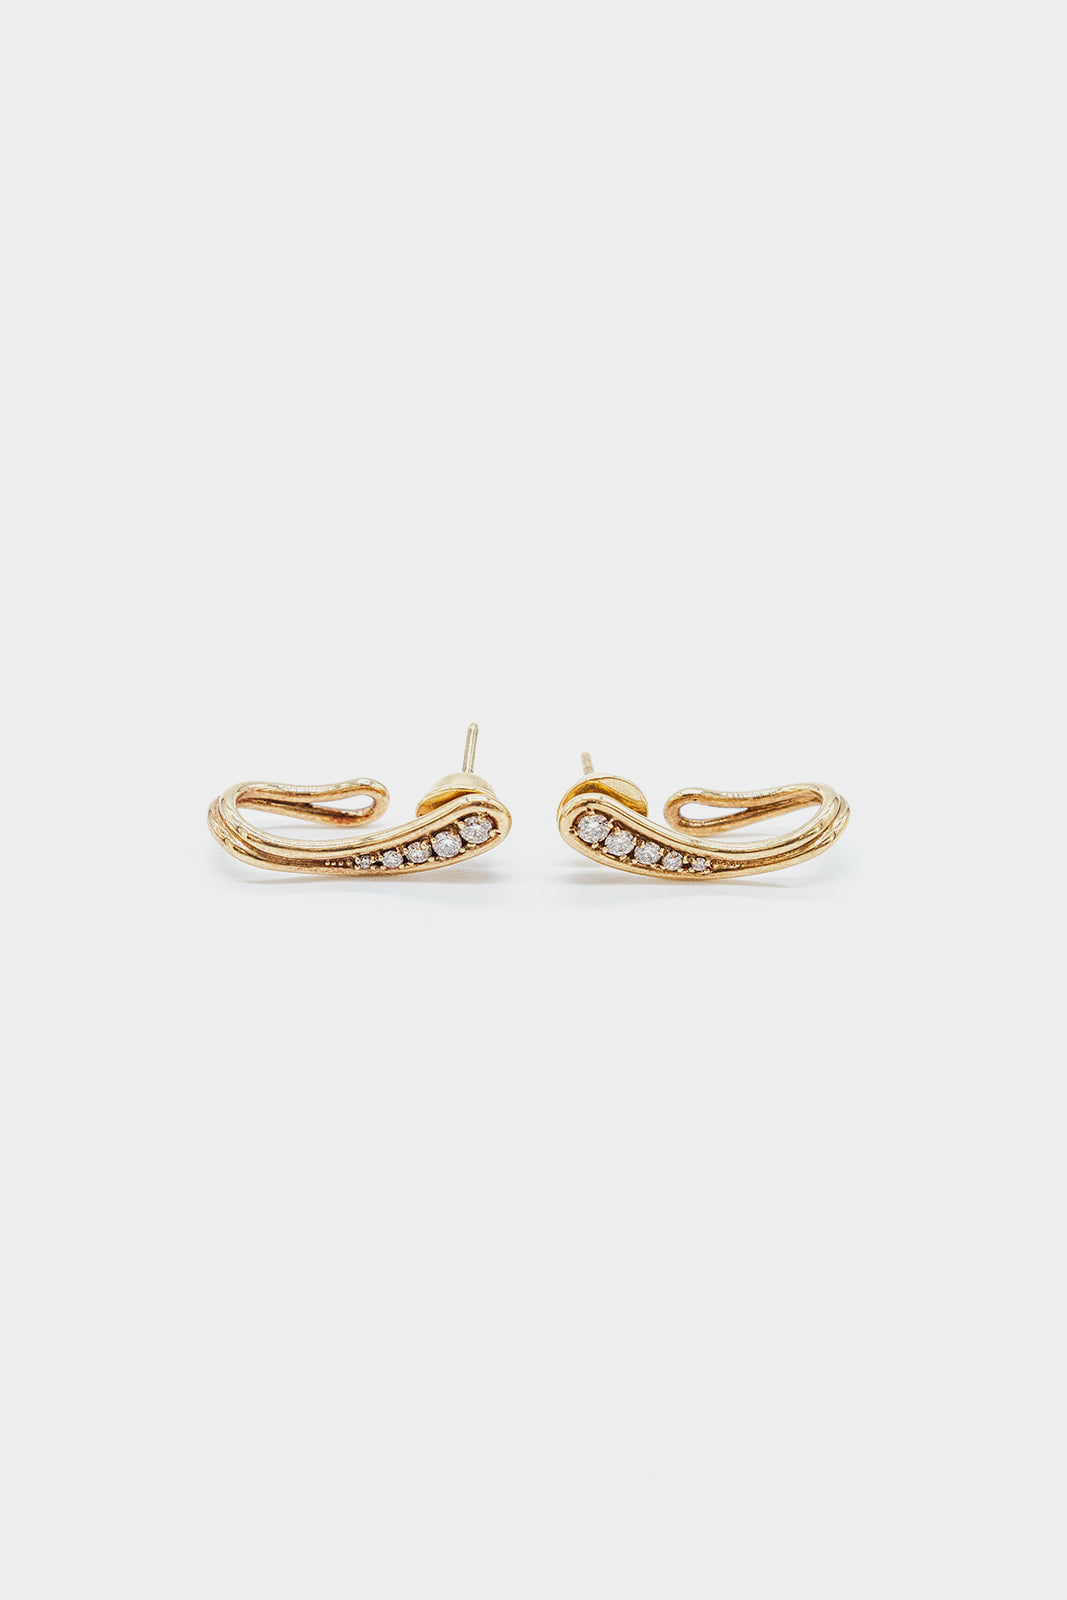 18K Yellow Gold Fluid Diamond Earrings